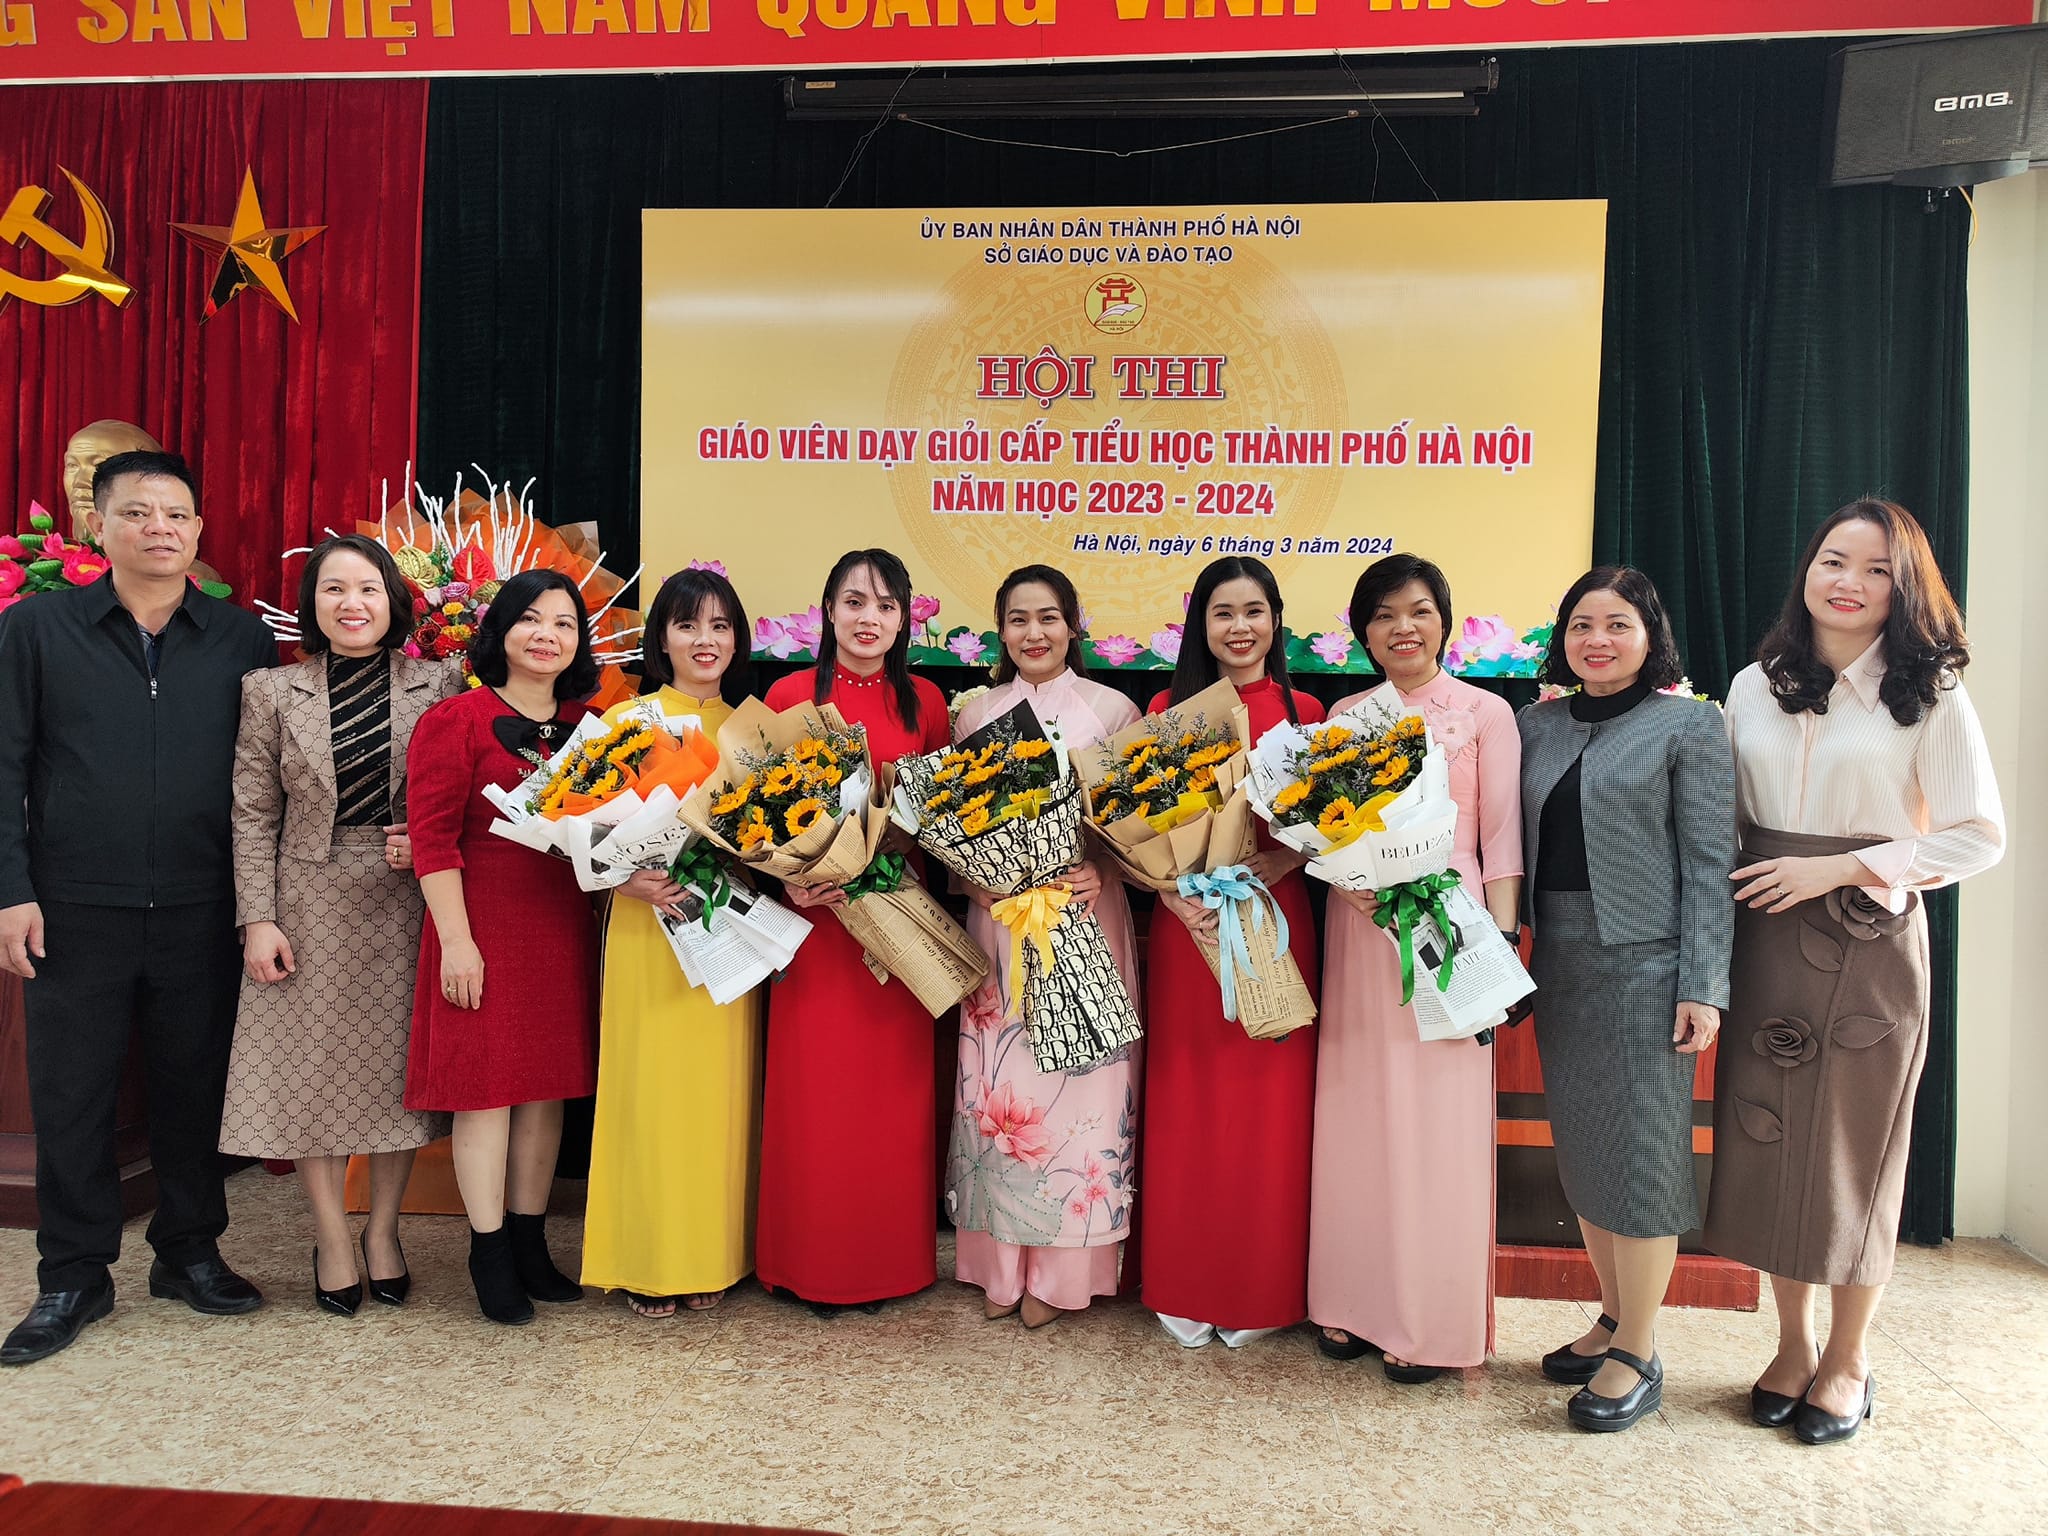 Cô giáo Nguyễn Lan Anh tham dự Hội thi Giáo viên dạy giỏi cấp Tiểu học thành phố Hà Nội năm học 2023-2024